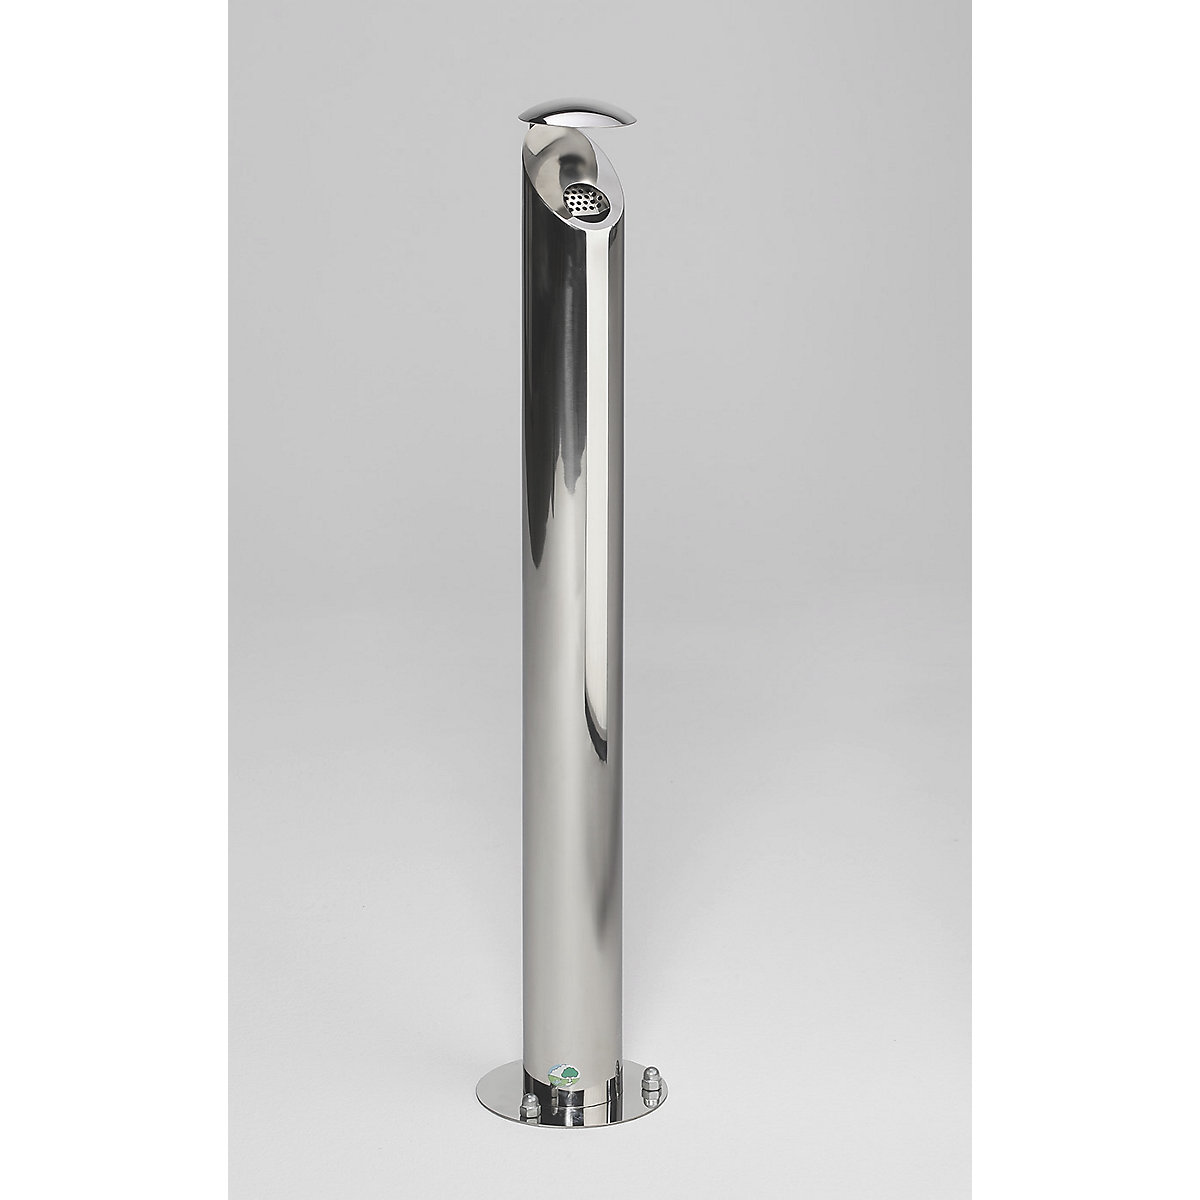 Stainless steel pedestal ashtray, lockable – VAR